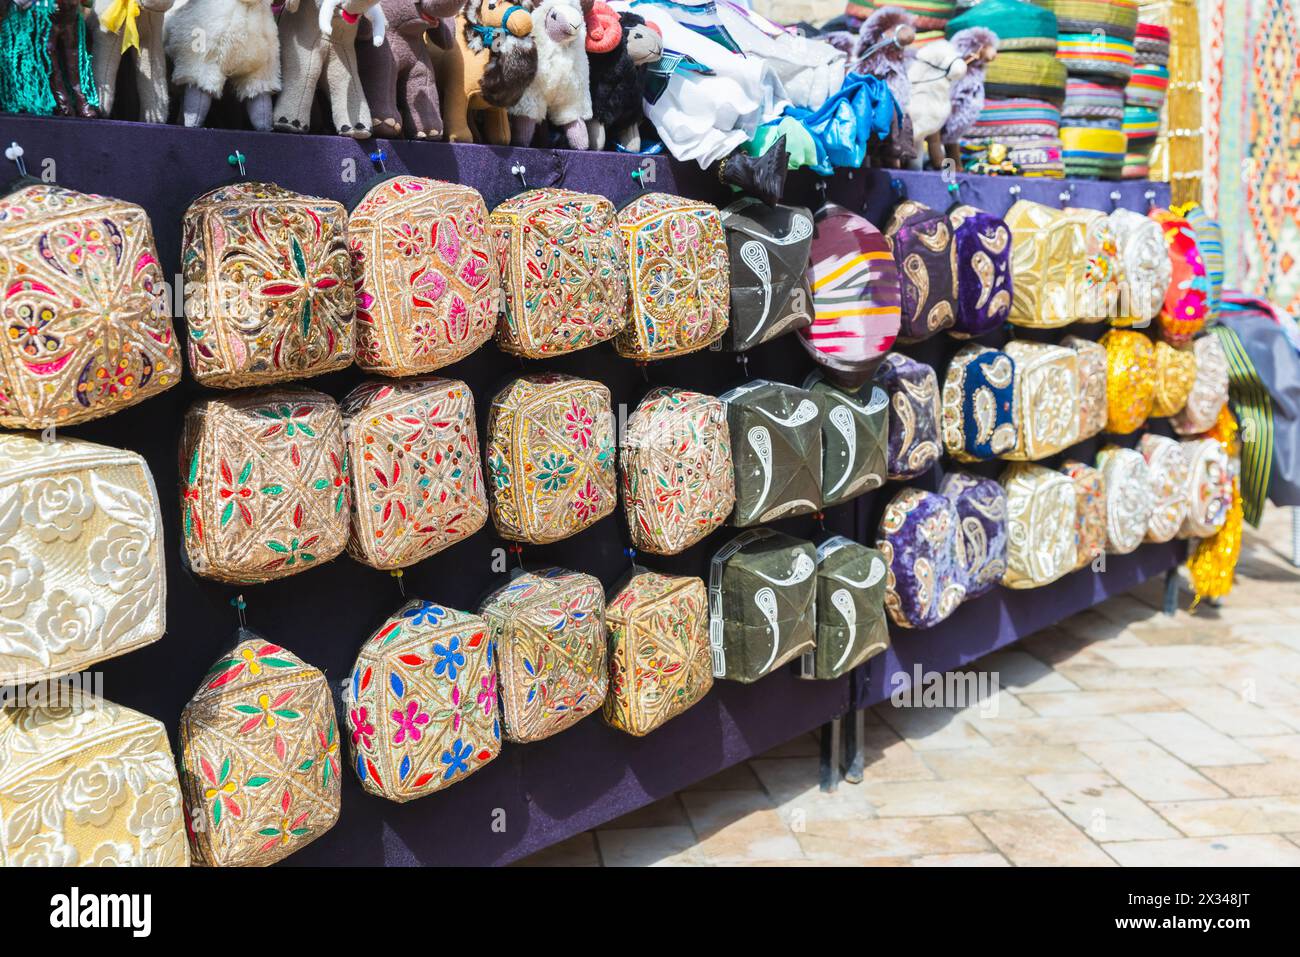 Der Doppa ist eine spezielle Art von Hut in der Kategorie Tubeteika, eine Vielzahl von usbekischen Schädelkappen mit quadratischer Form werden an einer Straßenmarkierung zum Verkauf angeboten Stockfoto